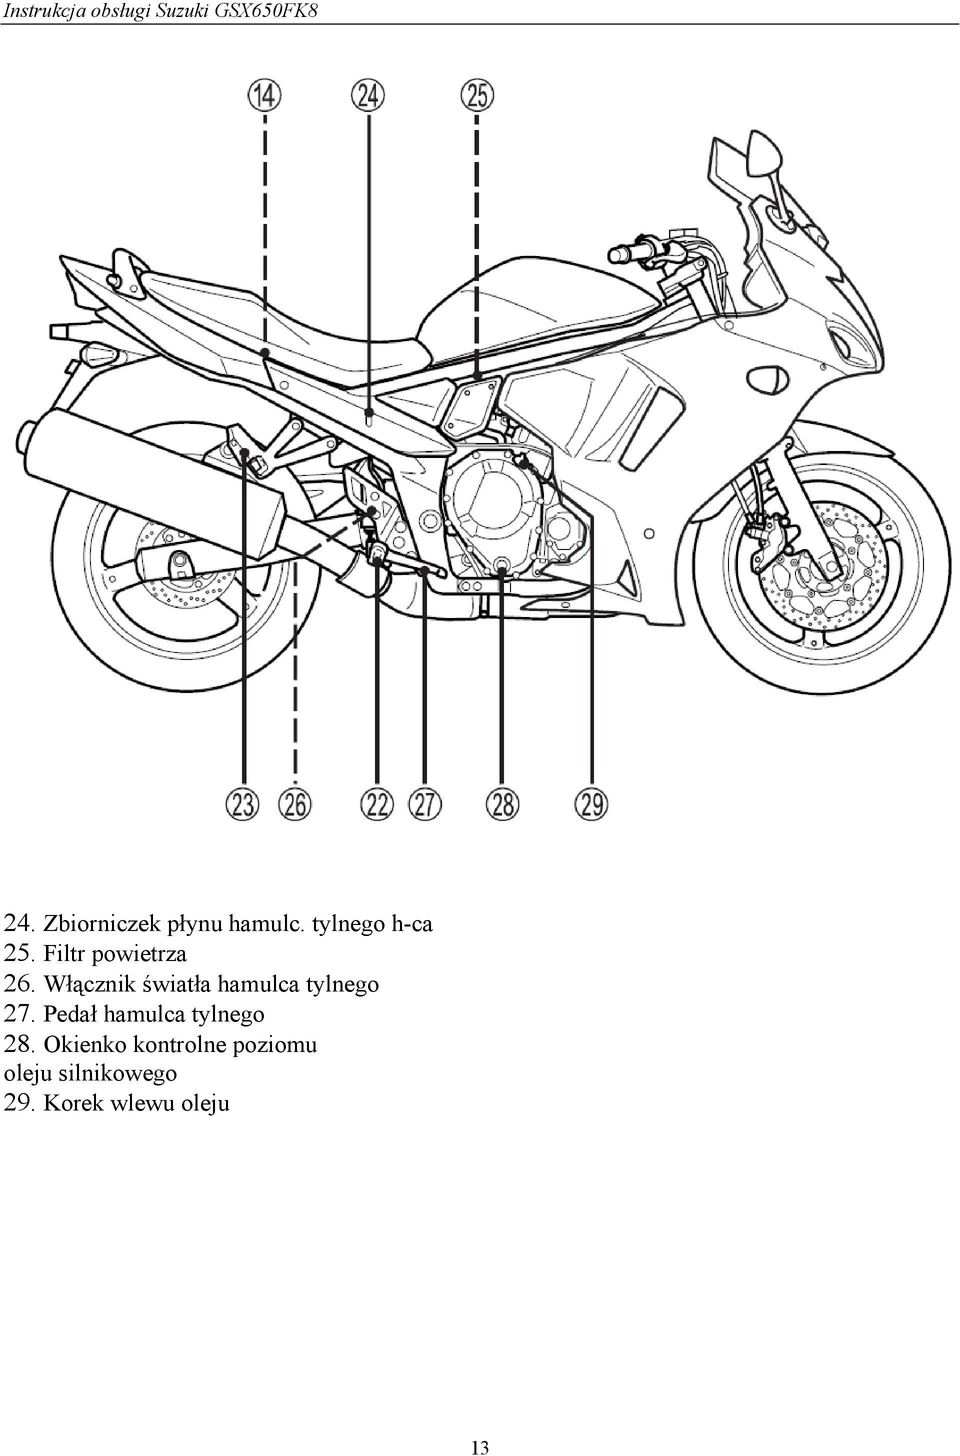 Instrukcja Obsługi Motocykla Suzuki Gsx650F - Pdf Darmowe Pobieranie